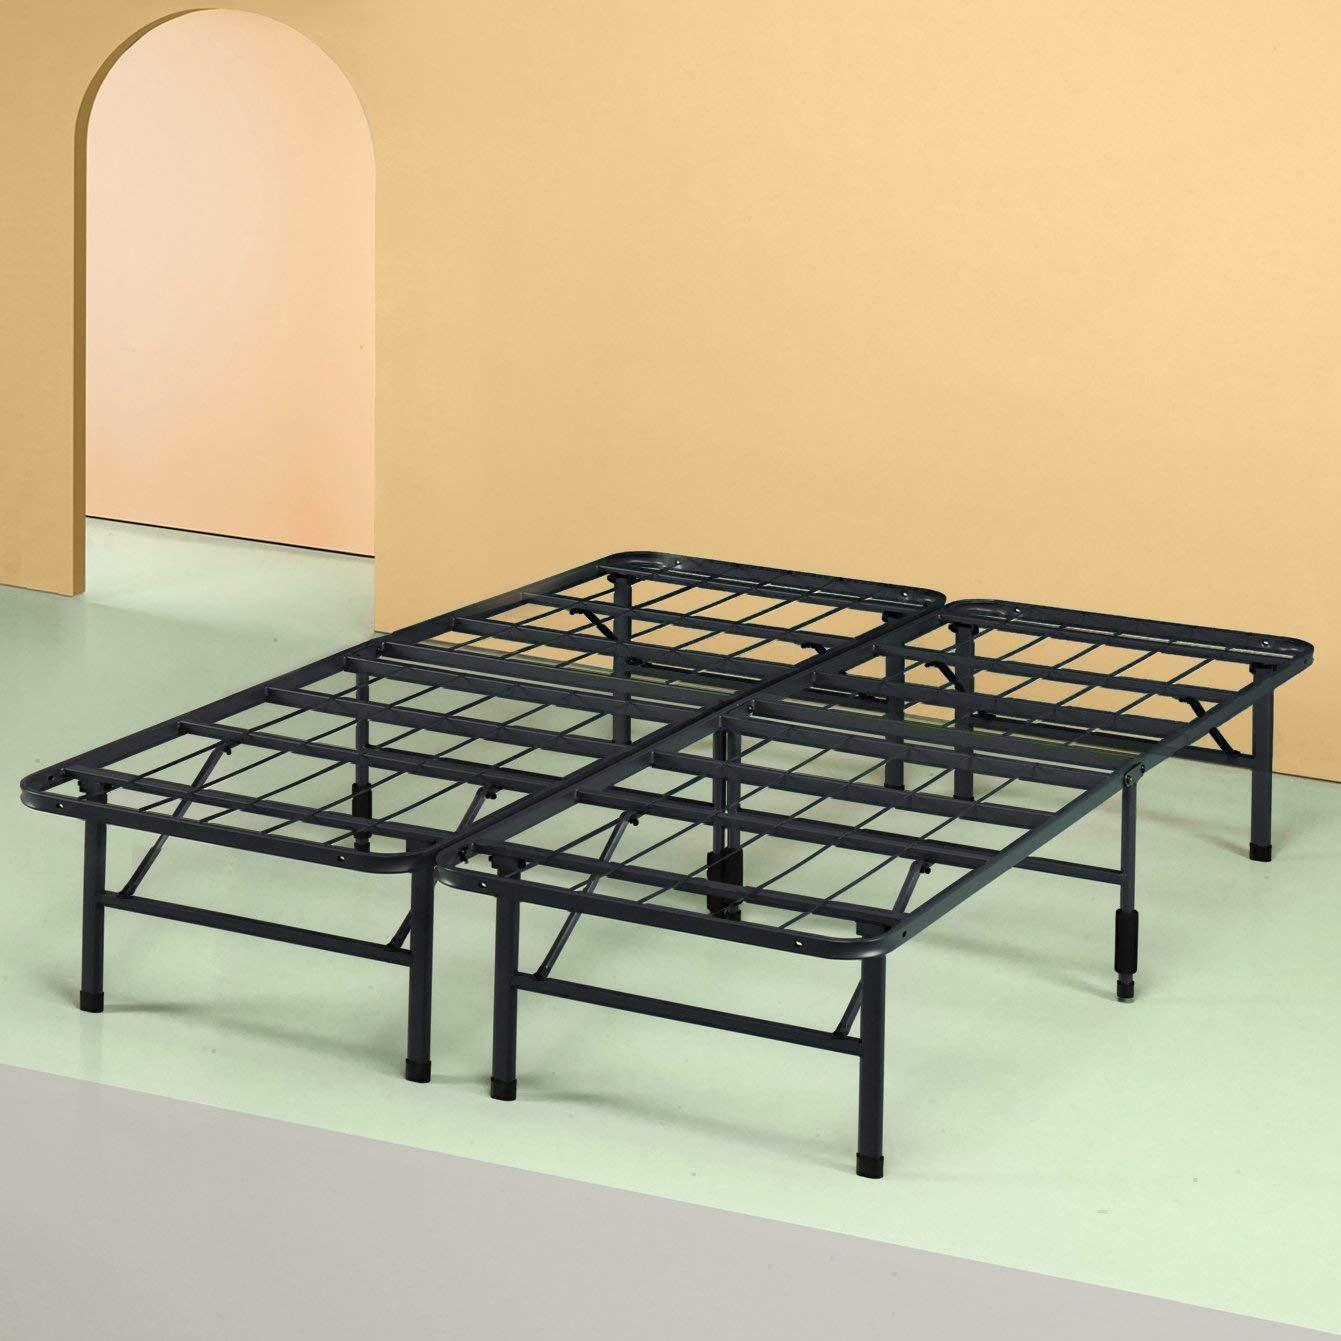 19 Best Metal Bed Frames 2020 The, Better Homes And Gardens 13 Adjustable Steel Bed Frame